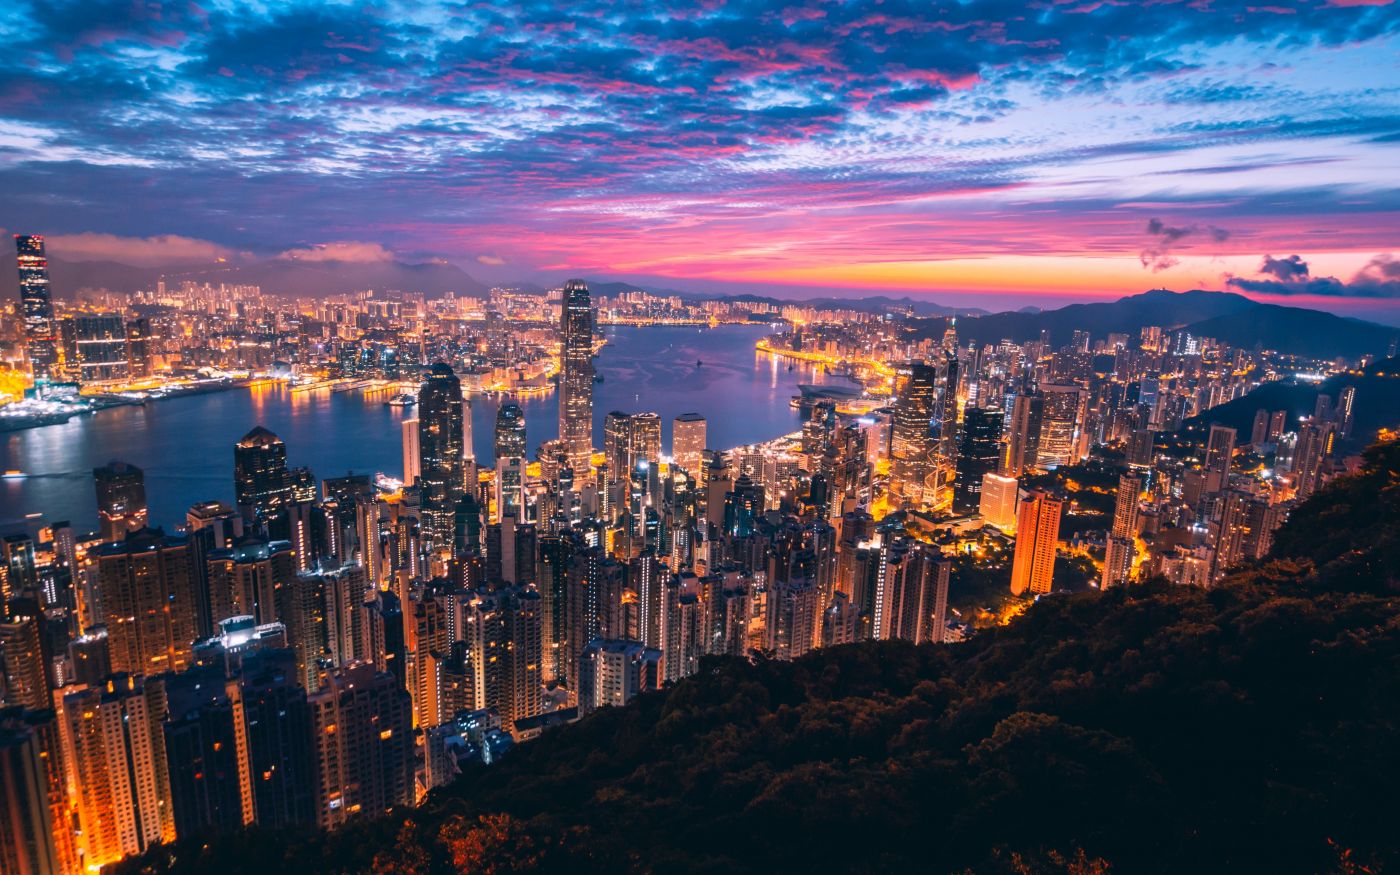 香港城市夜景壁纸 欧莱凯设计网 08php Com